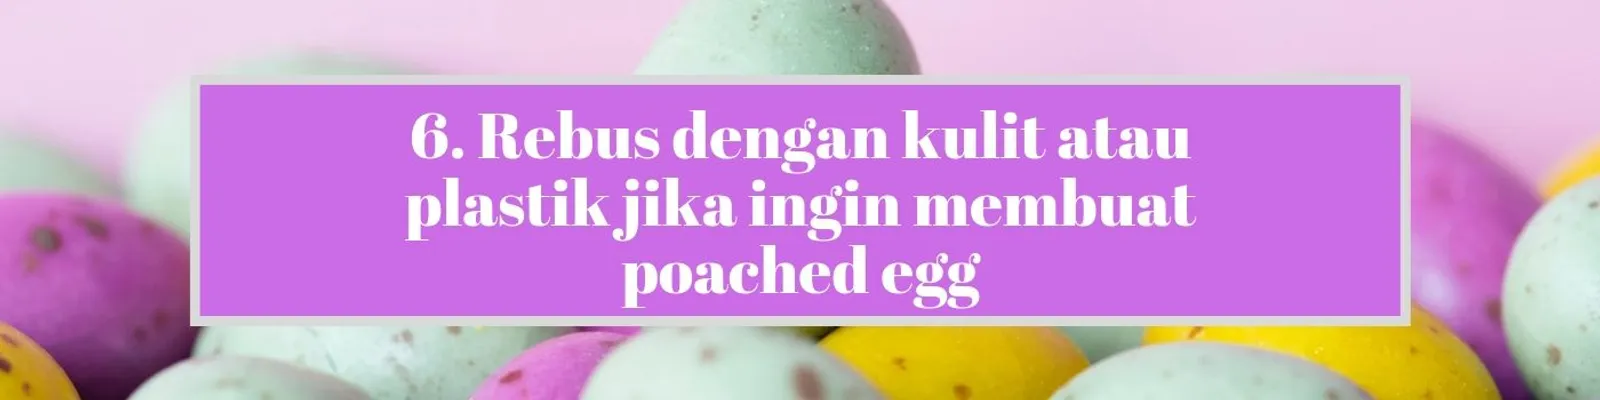 10 Tips Memasak Telur dari Koki yang Patut Kamu Coba